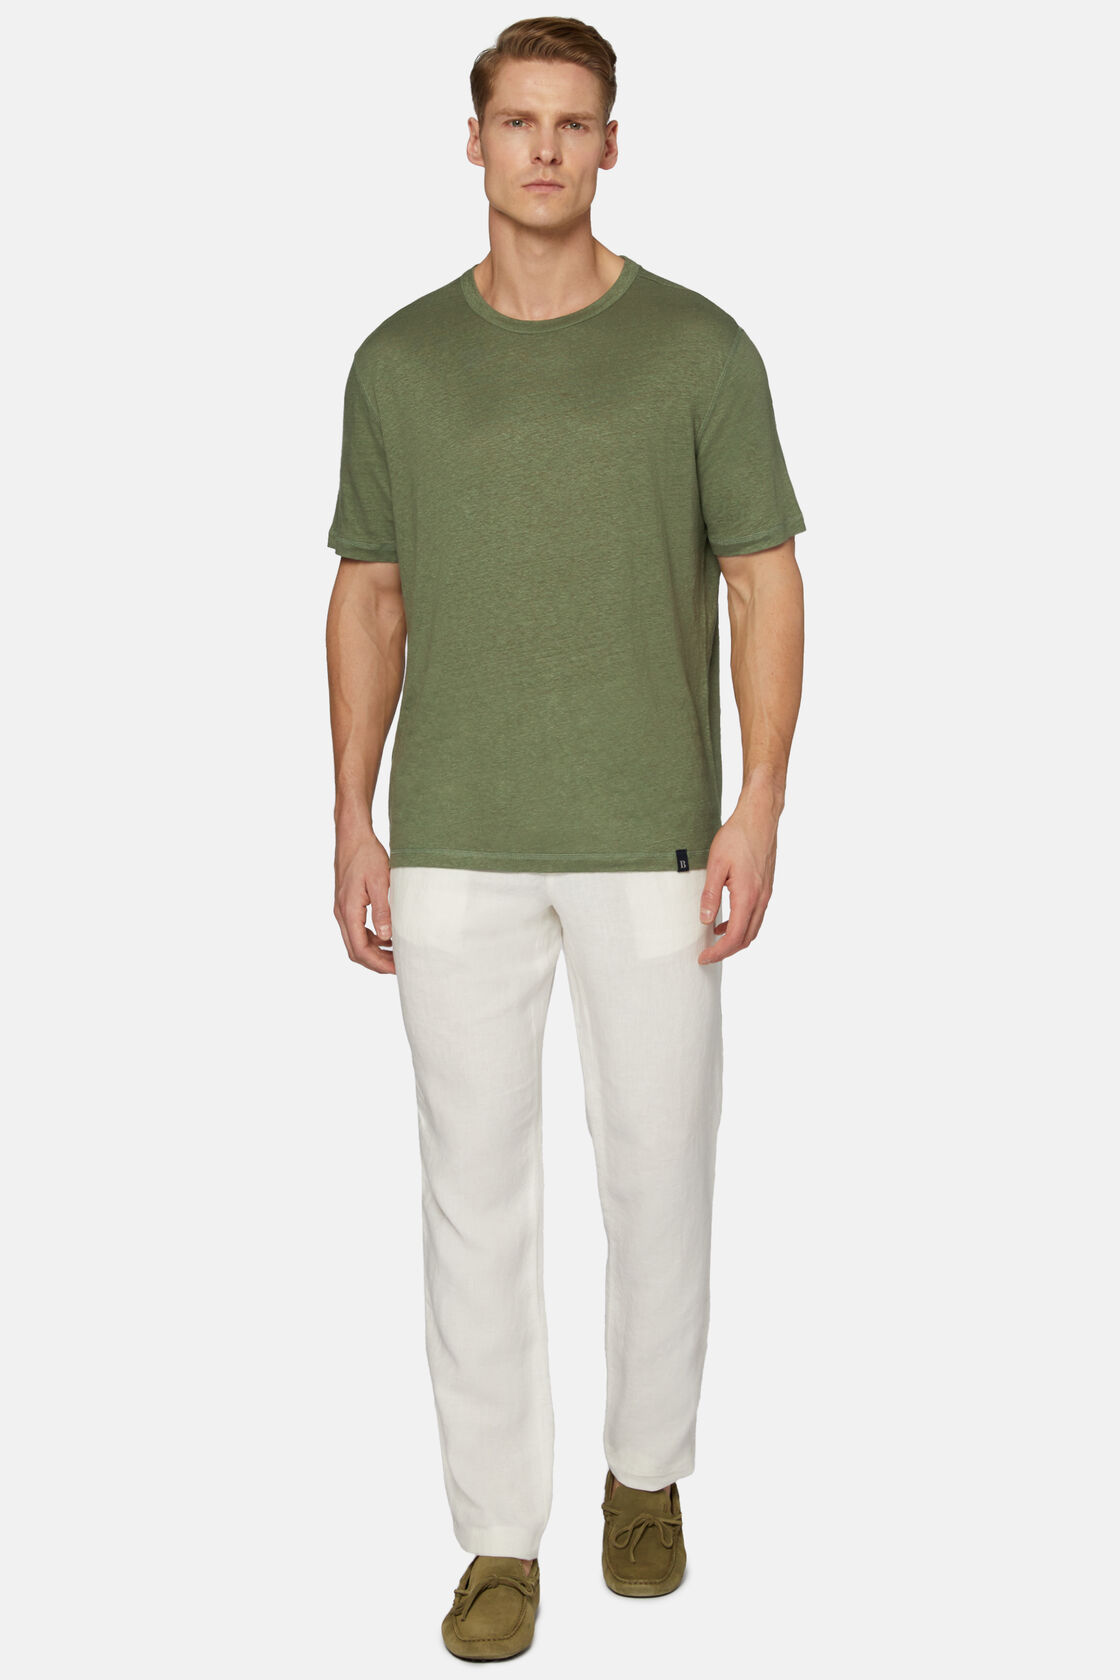 Κοντομάνικο μπλουζάκι από ελαστικό λινό ζέρσεϊ, Military Green, hi-res